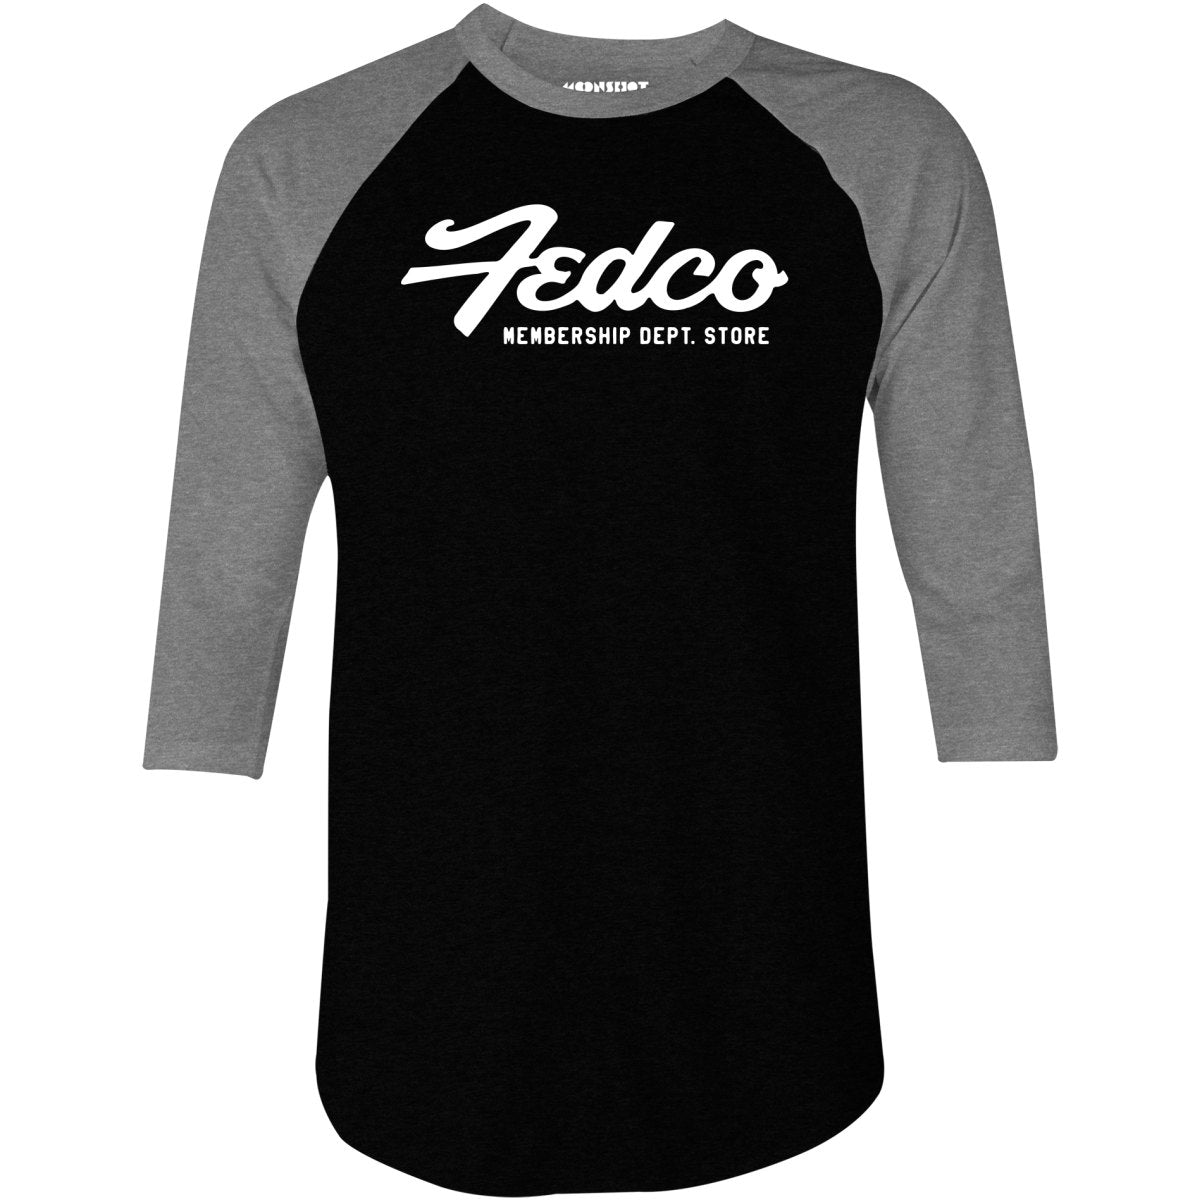 Fedco - Vintage Department Store - 3/4 Sleeve Raglan T-Shirt